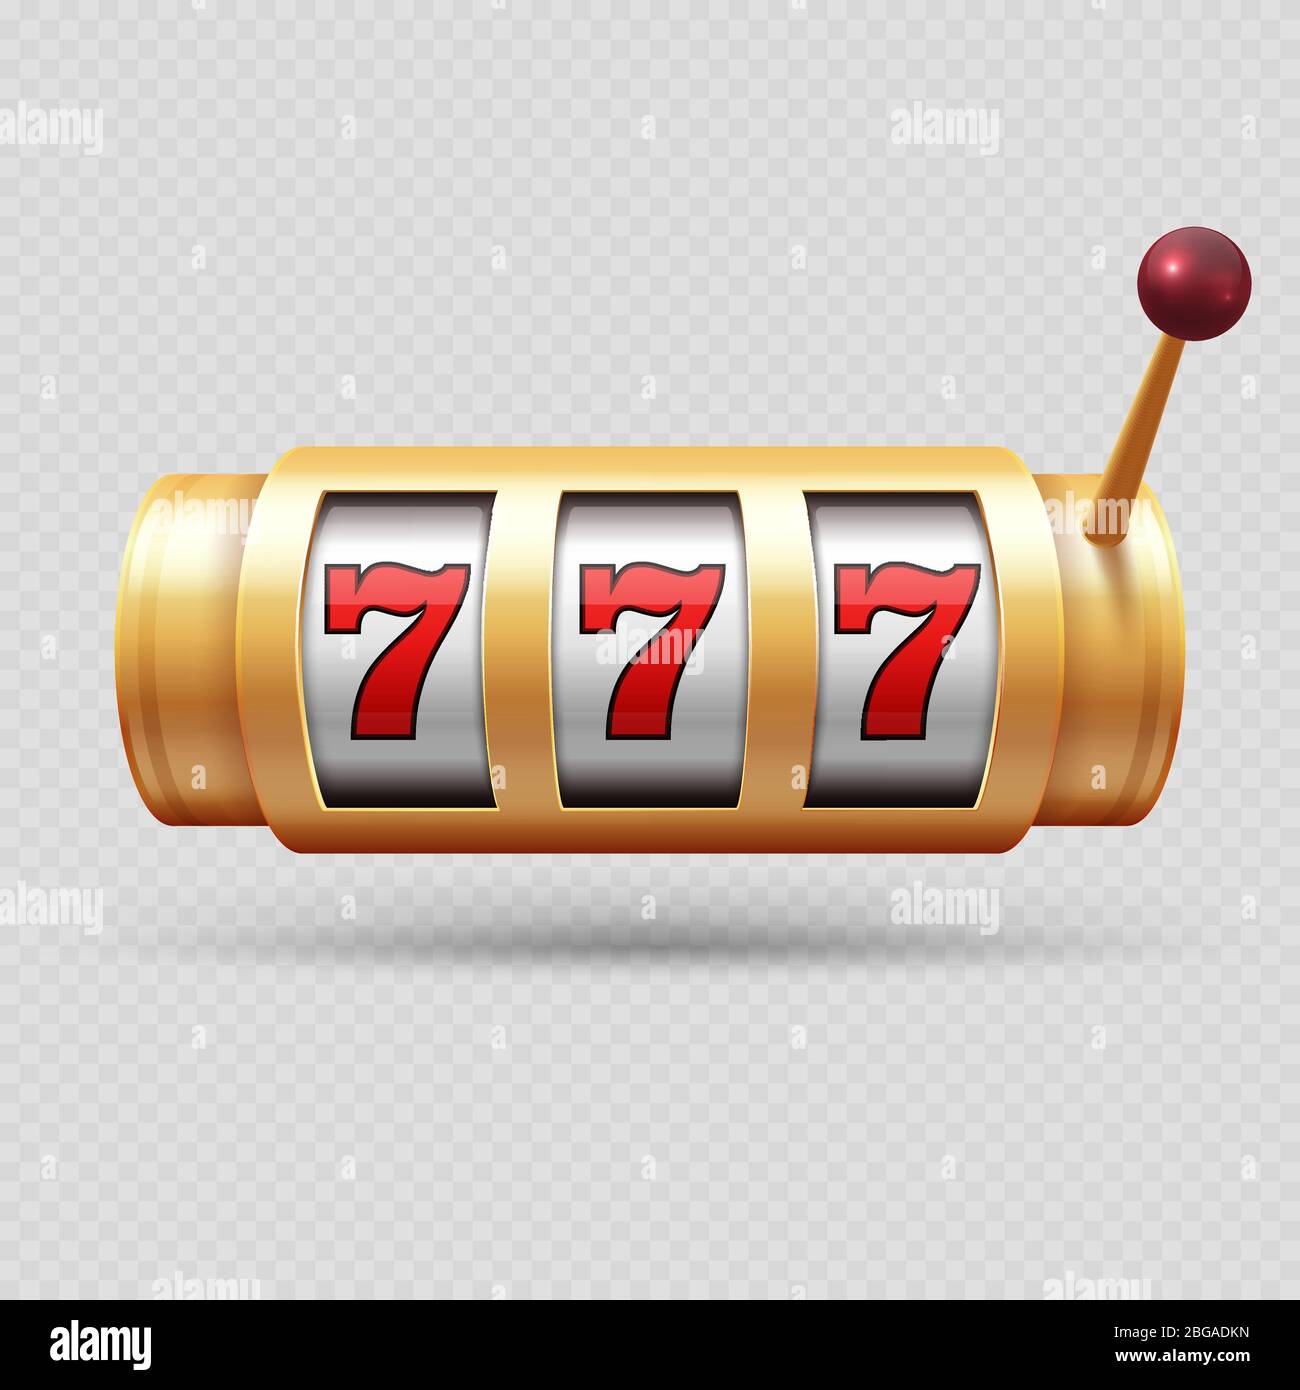 Realistische Casino-Spielautomat oder glückliches Symbol isoliert Vektor-Objekt. Chance im Casino gewinnen Jackpot, Glück Spiel Illustration Stock Vektor